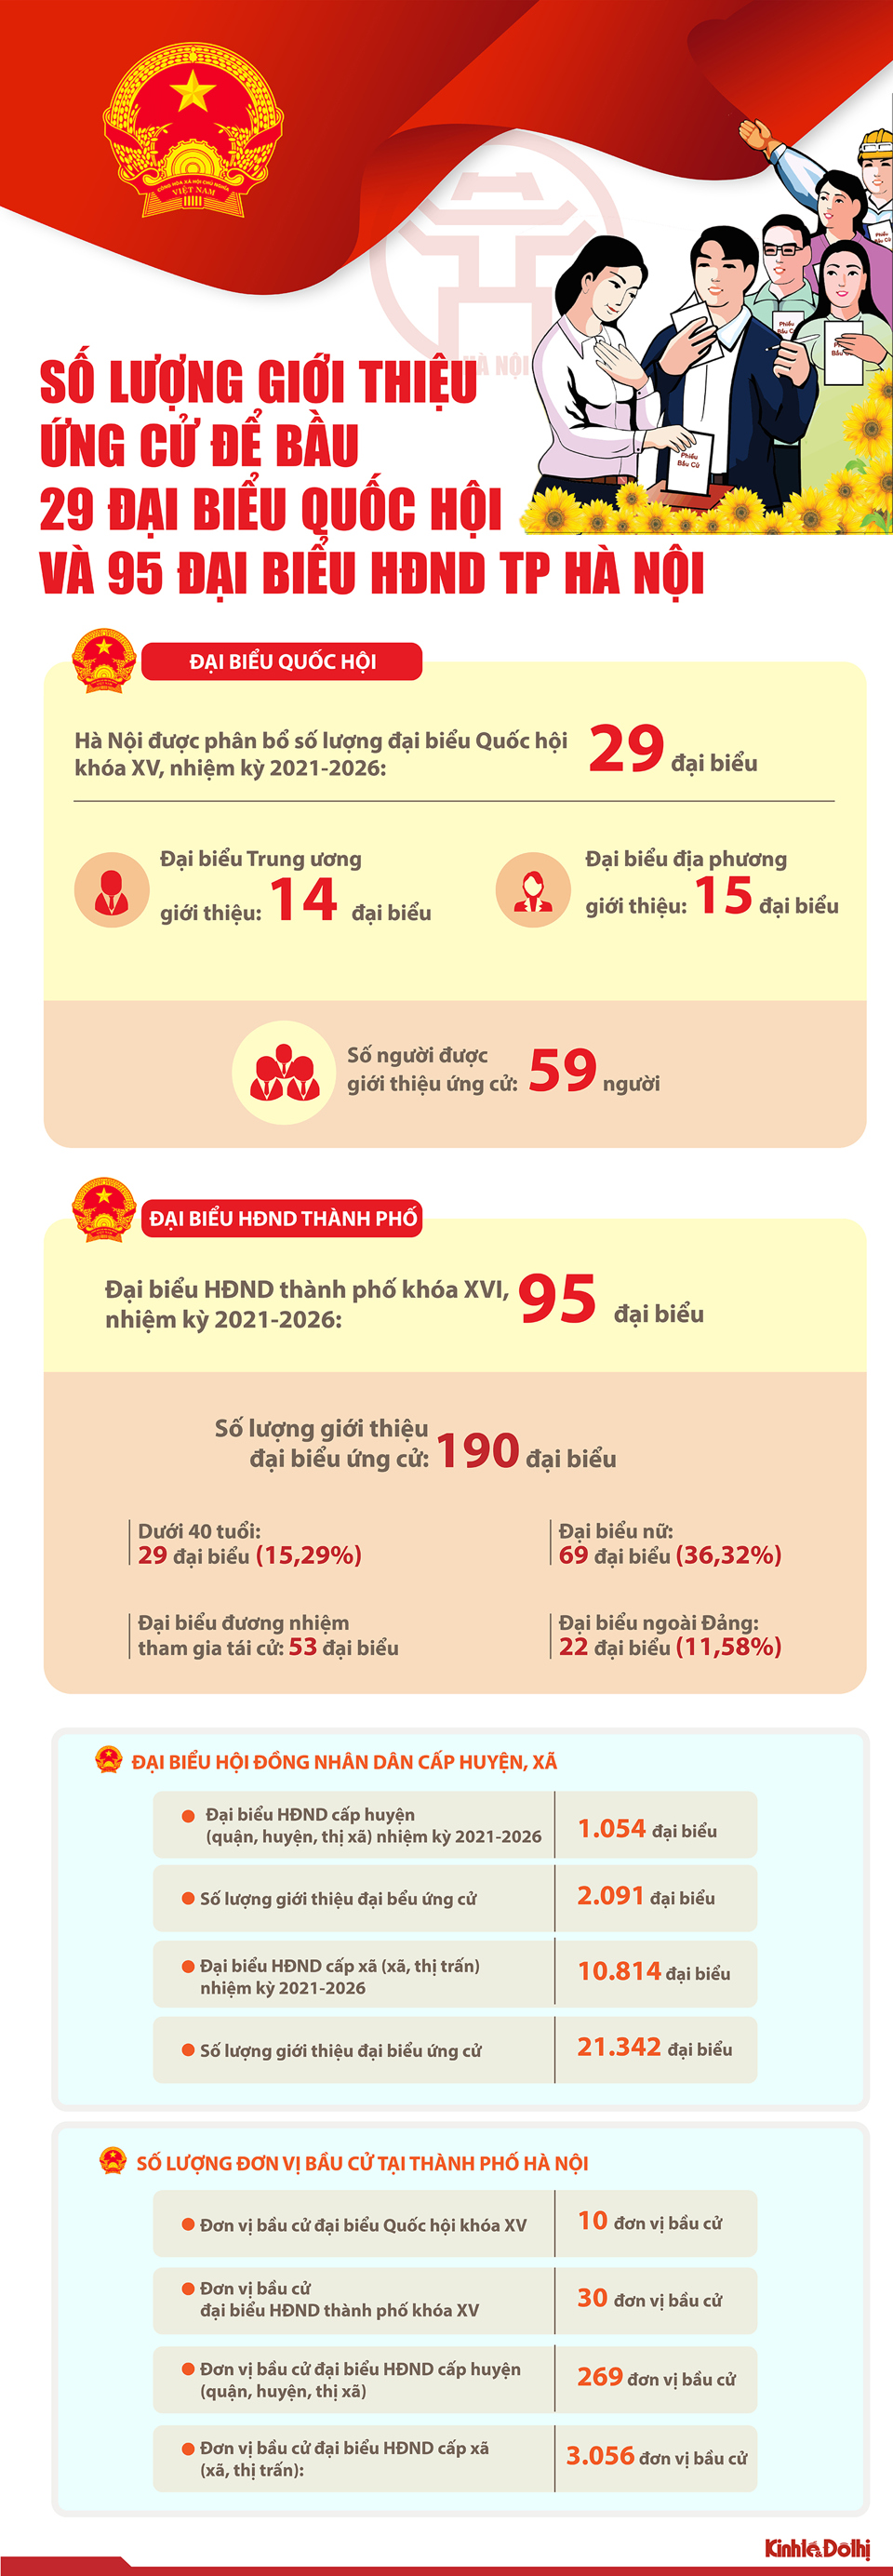 [Infographic] Số lượng người giới thiệu ứng cử để bầu 29 đại biểu Quốc hội và 95 đại biểu HĐND TP Hà Nội - Ảnh 1